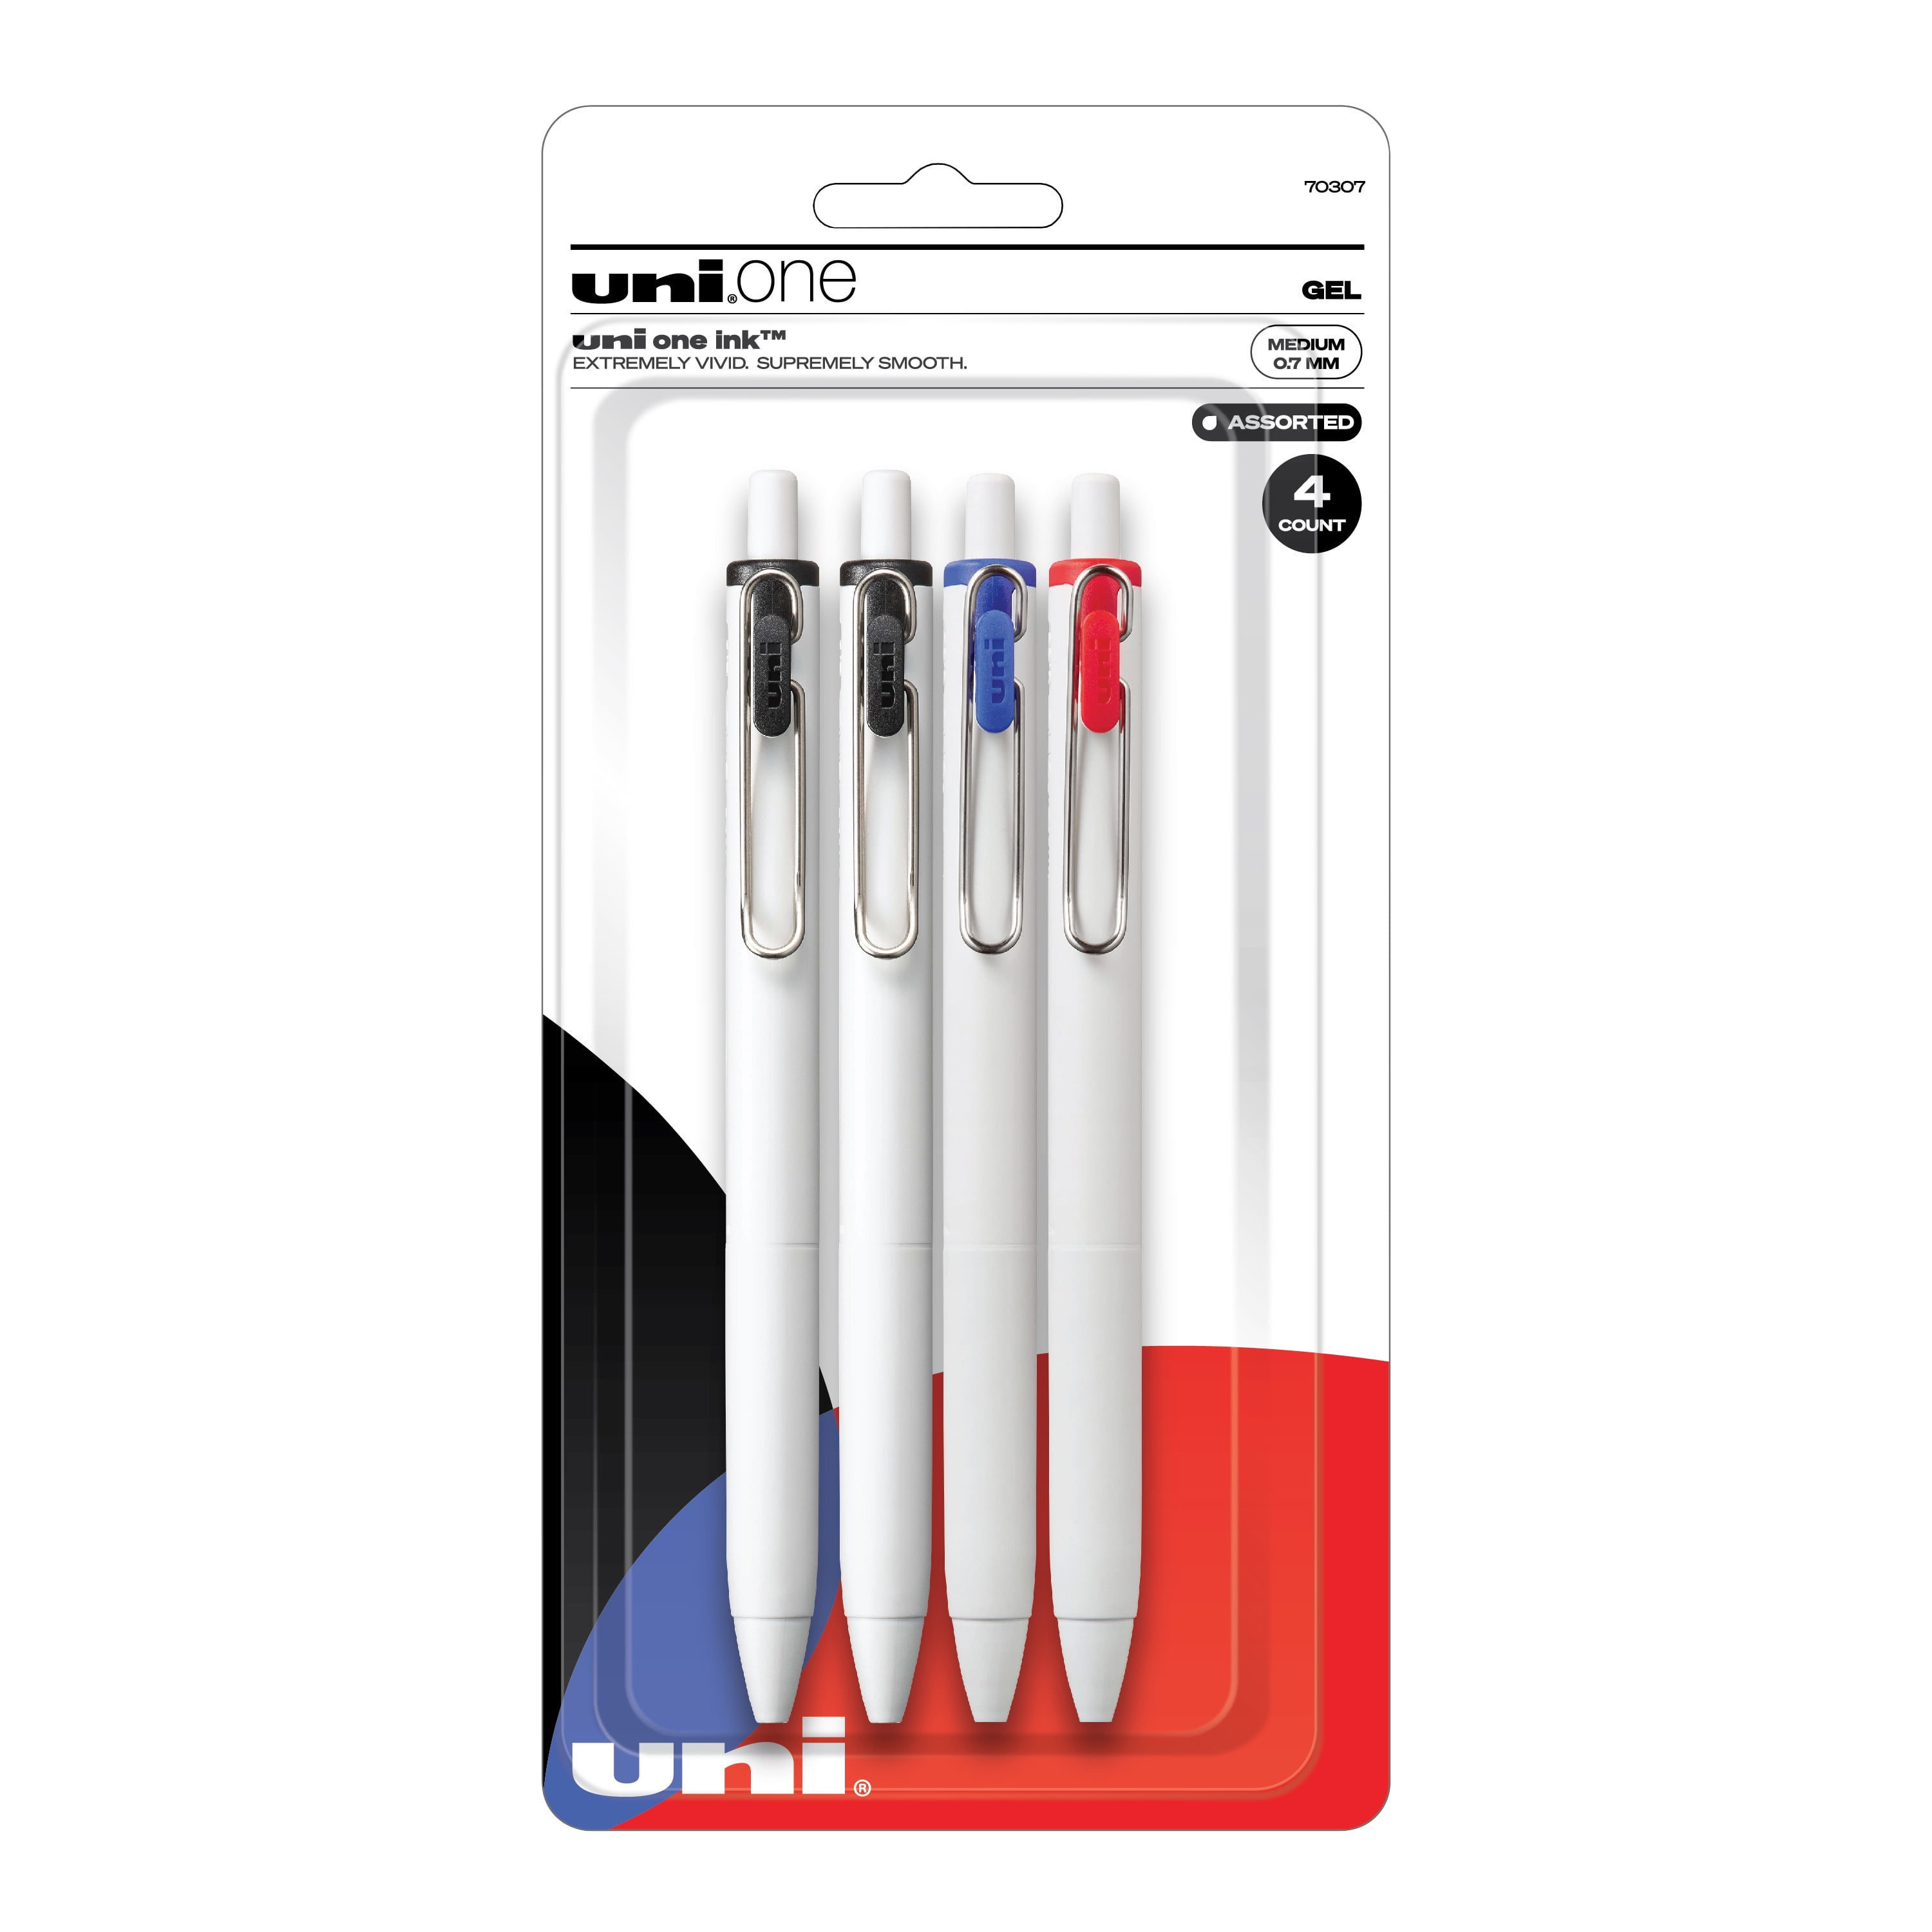 Marker Waterproof, Black Gel Pens, Hook Line Pen